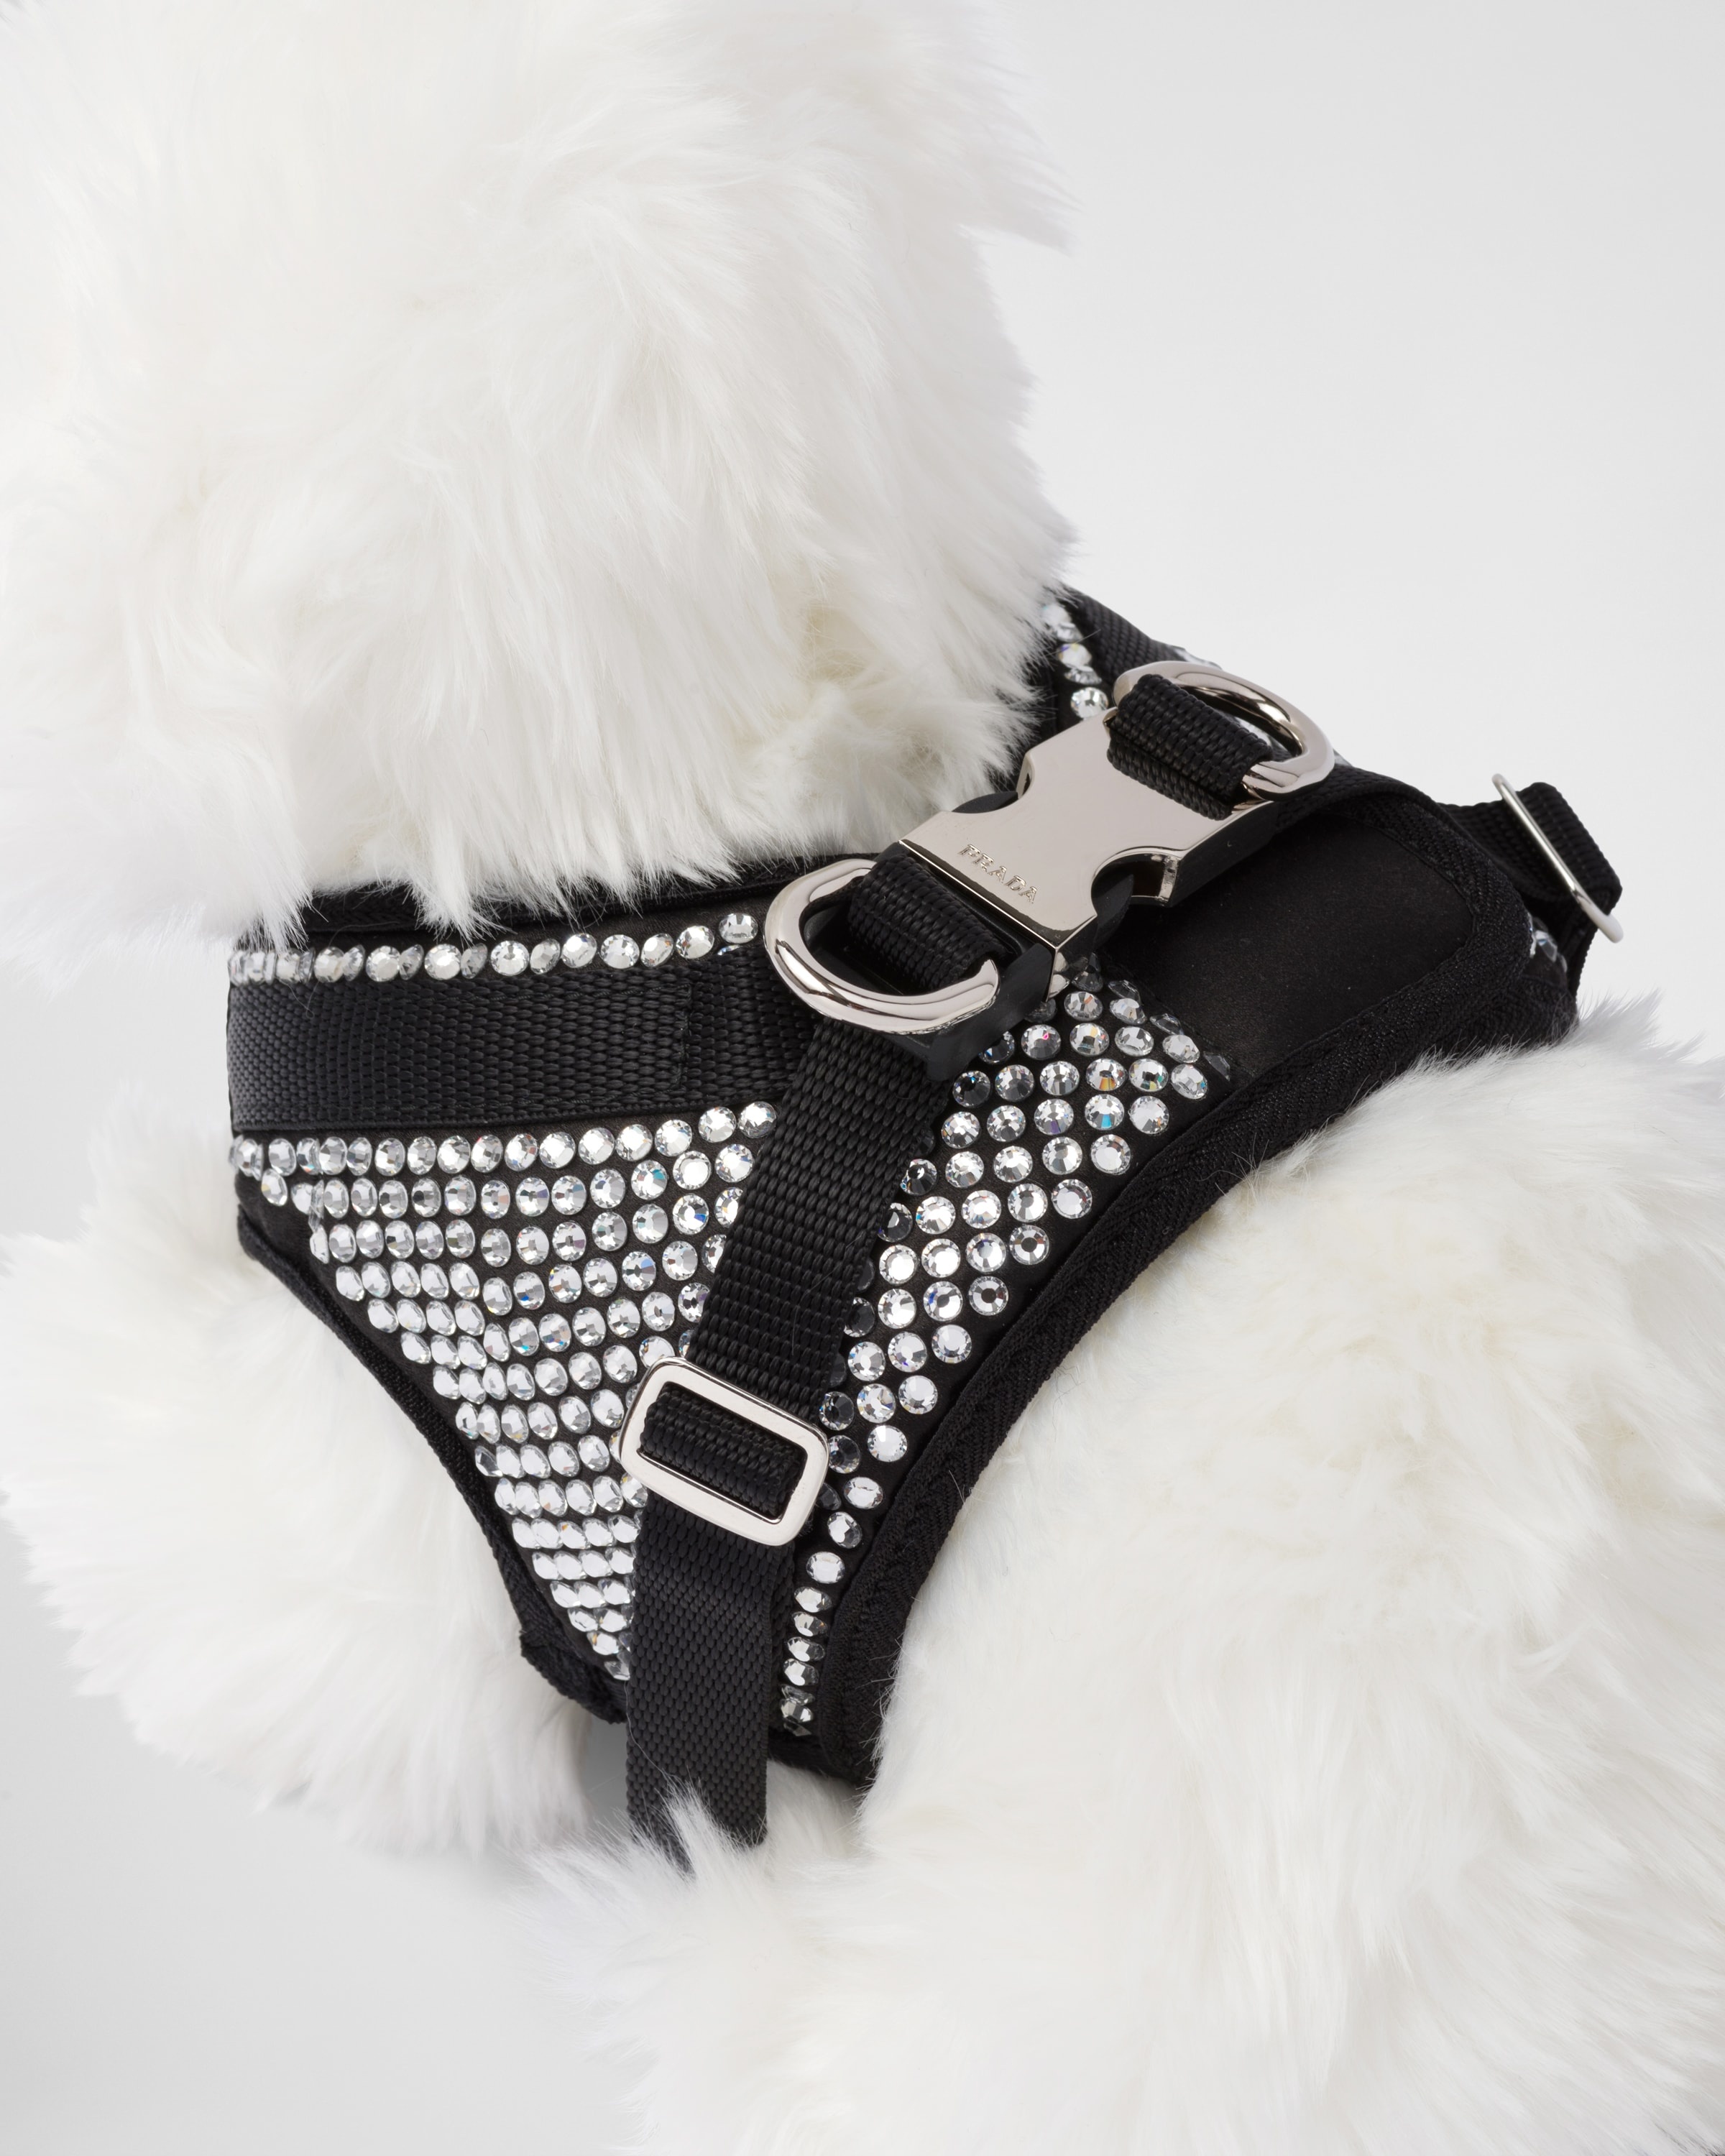 Crystal-studded satin dog harness - 3